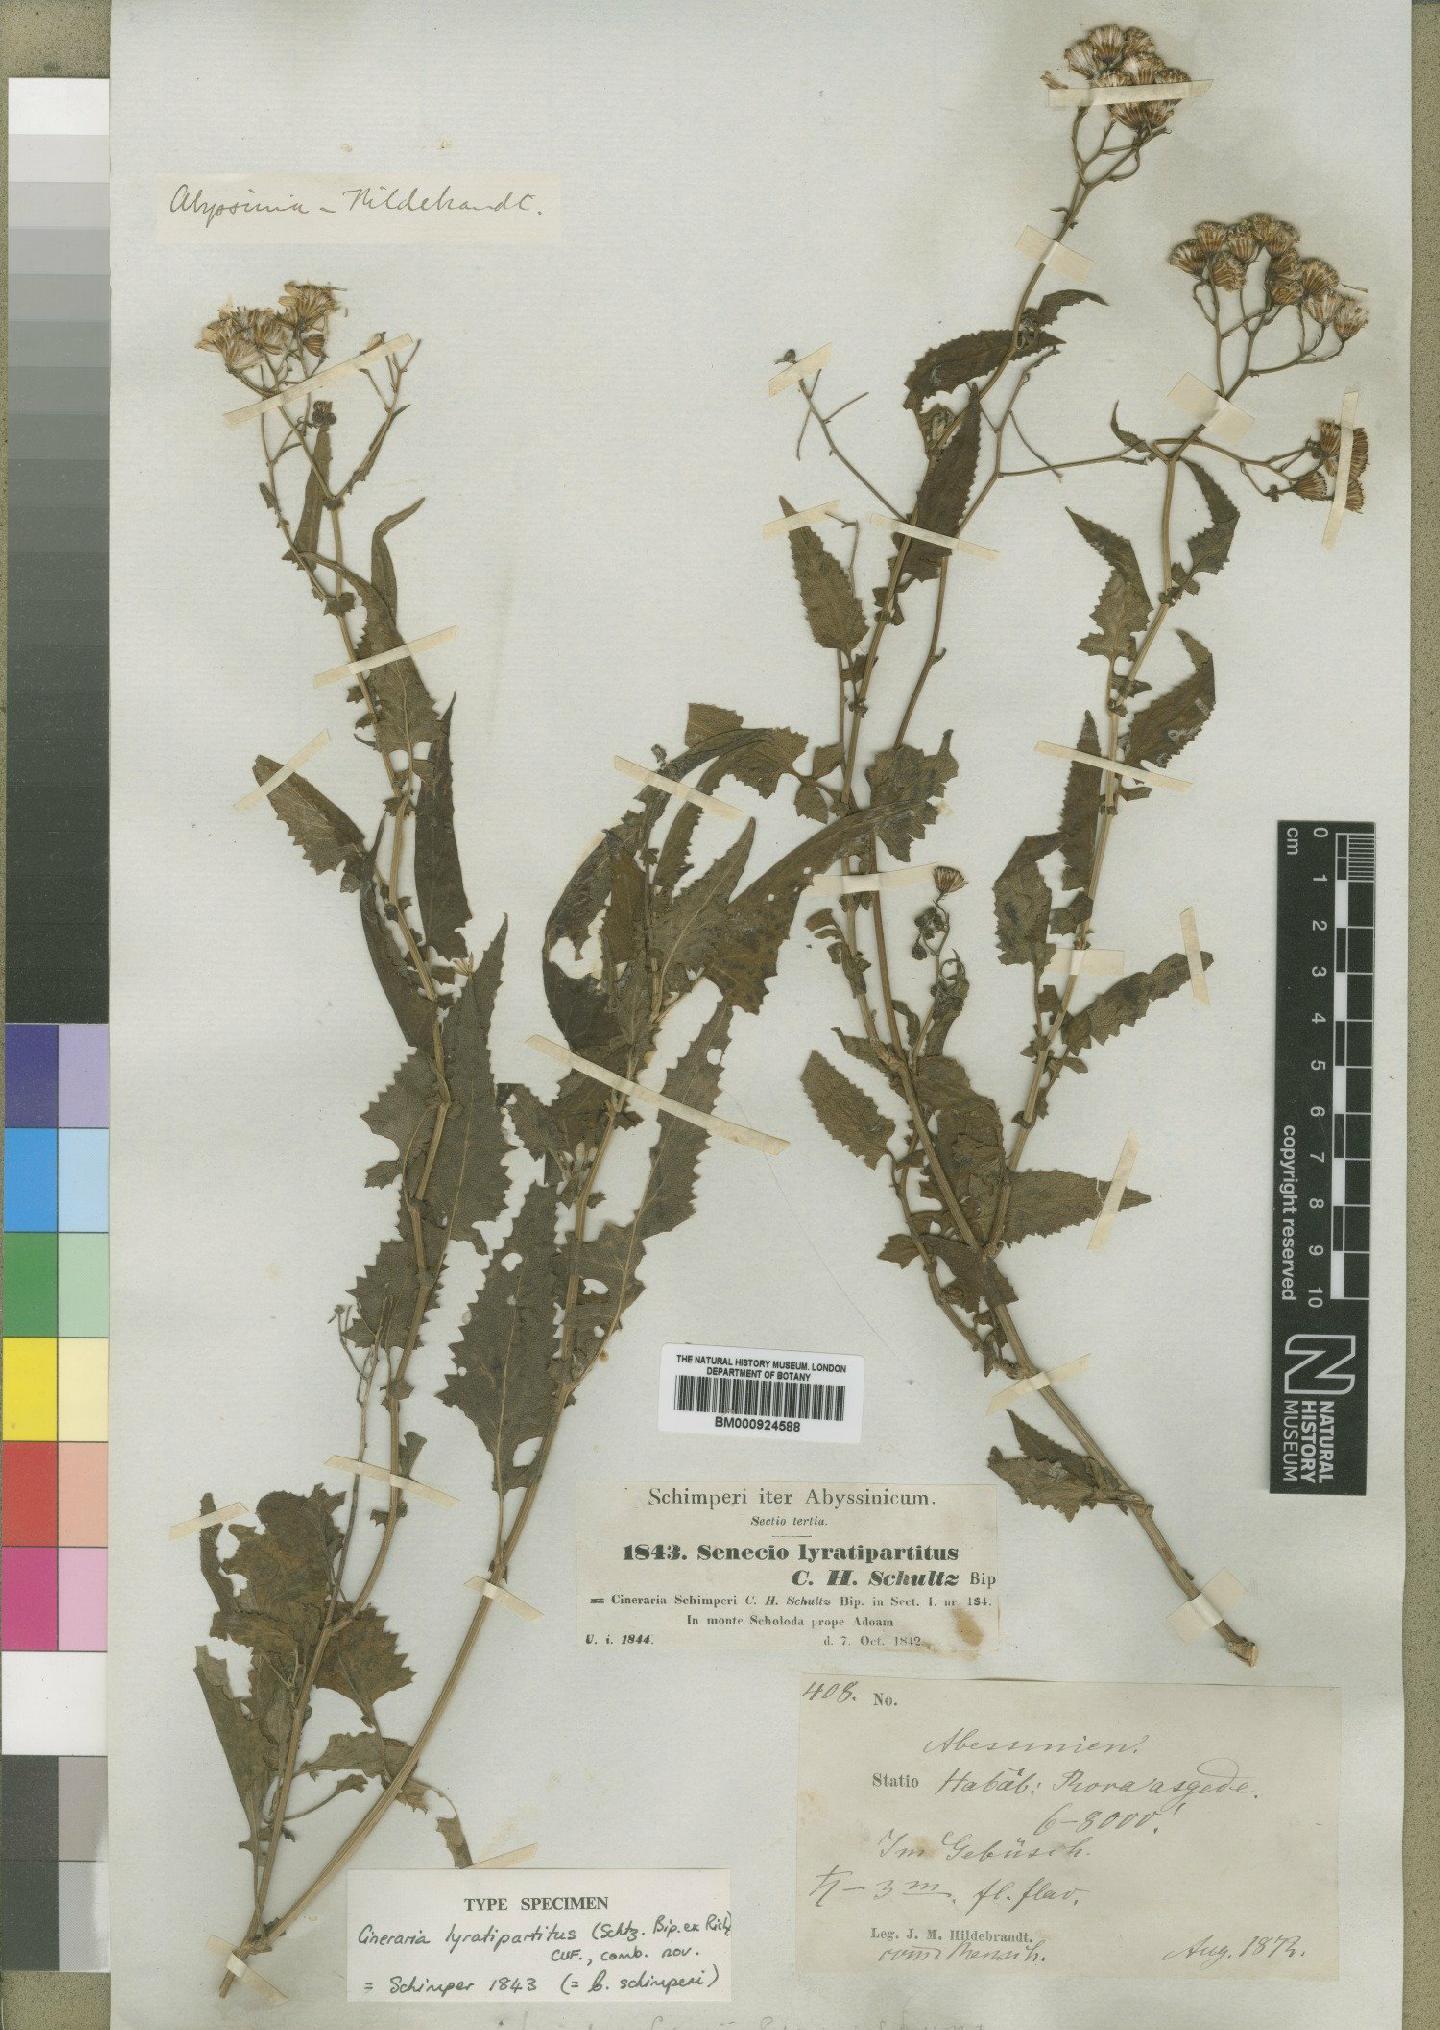 To NHMUK collection (Cineraria lyratipartita Cufod; Type; NHMUK:ecatalogue:4529600)